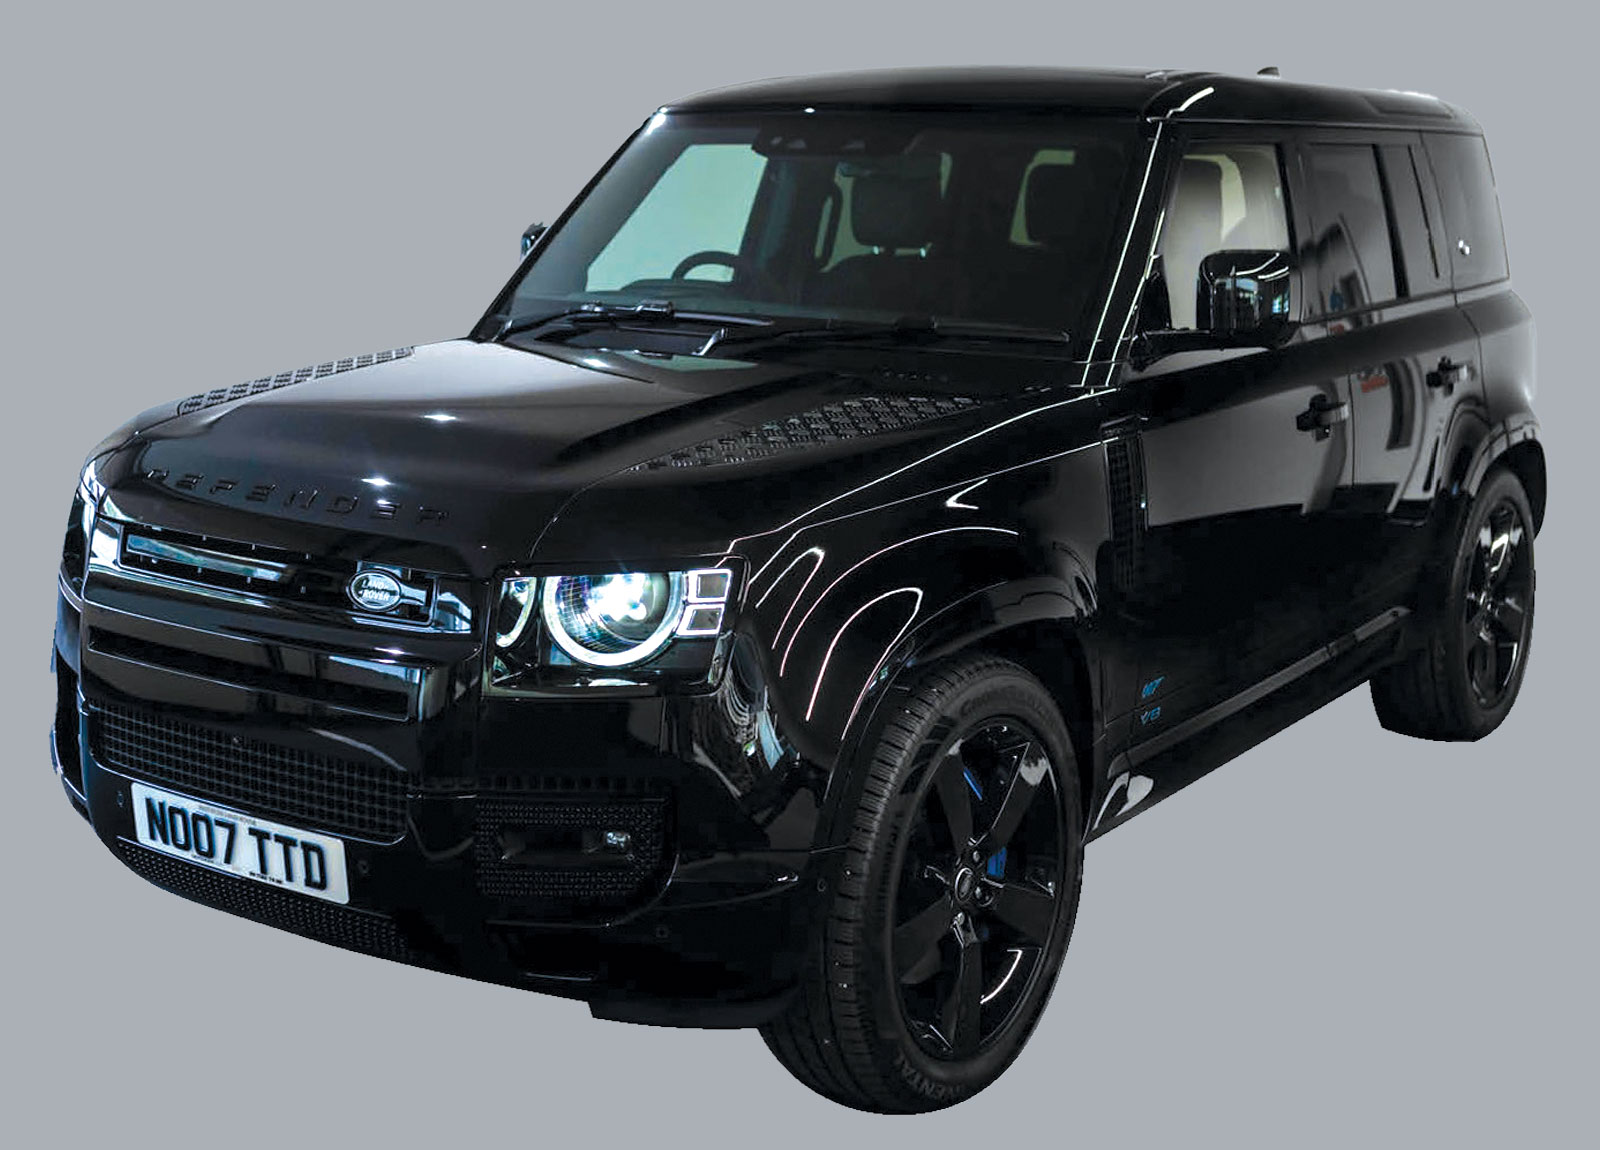 Land Rover Defender 110 James Bond Edition For Sale front